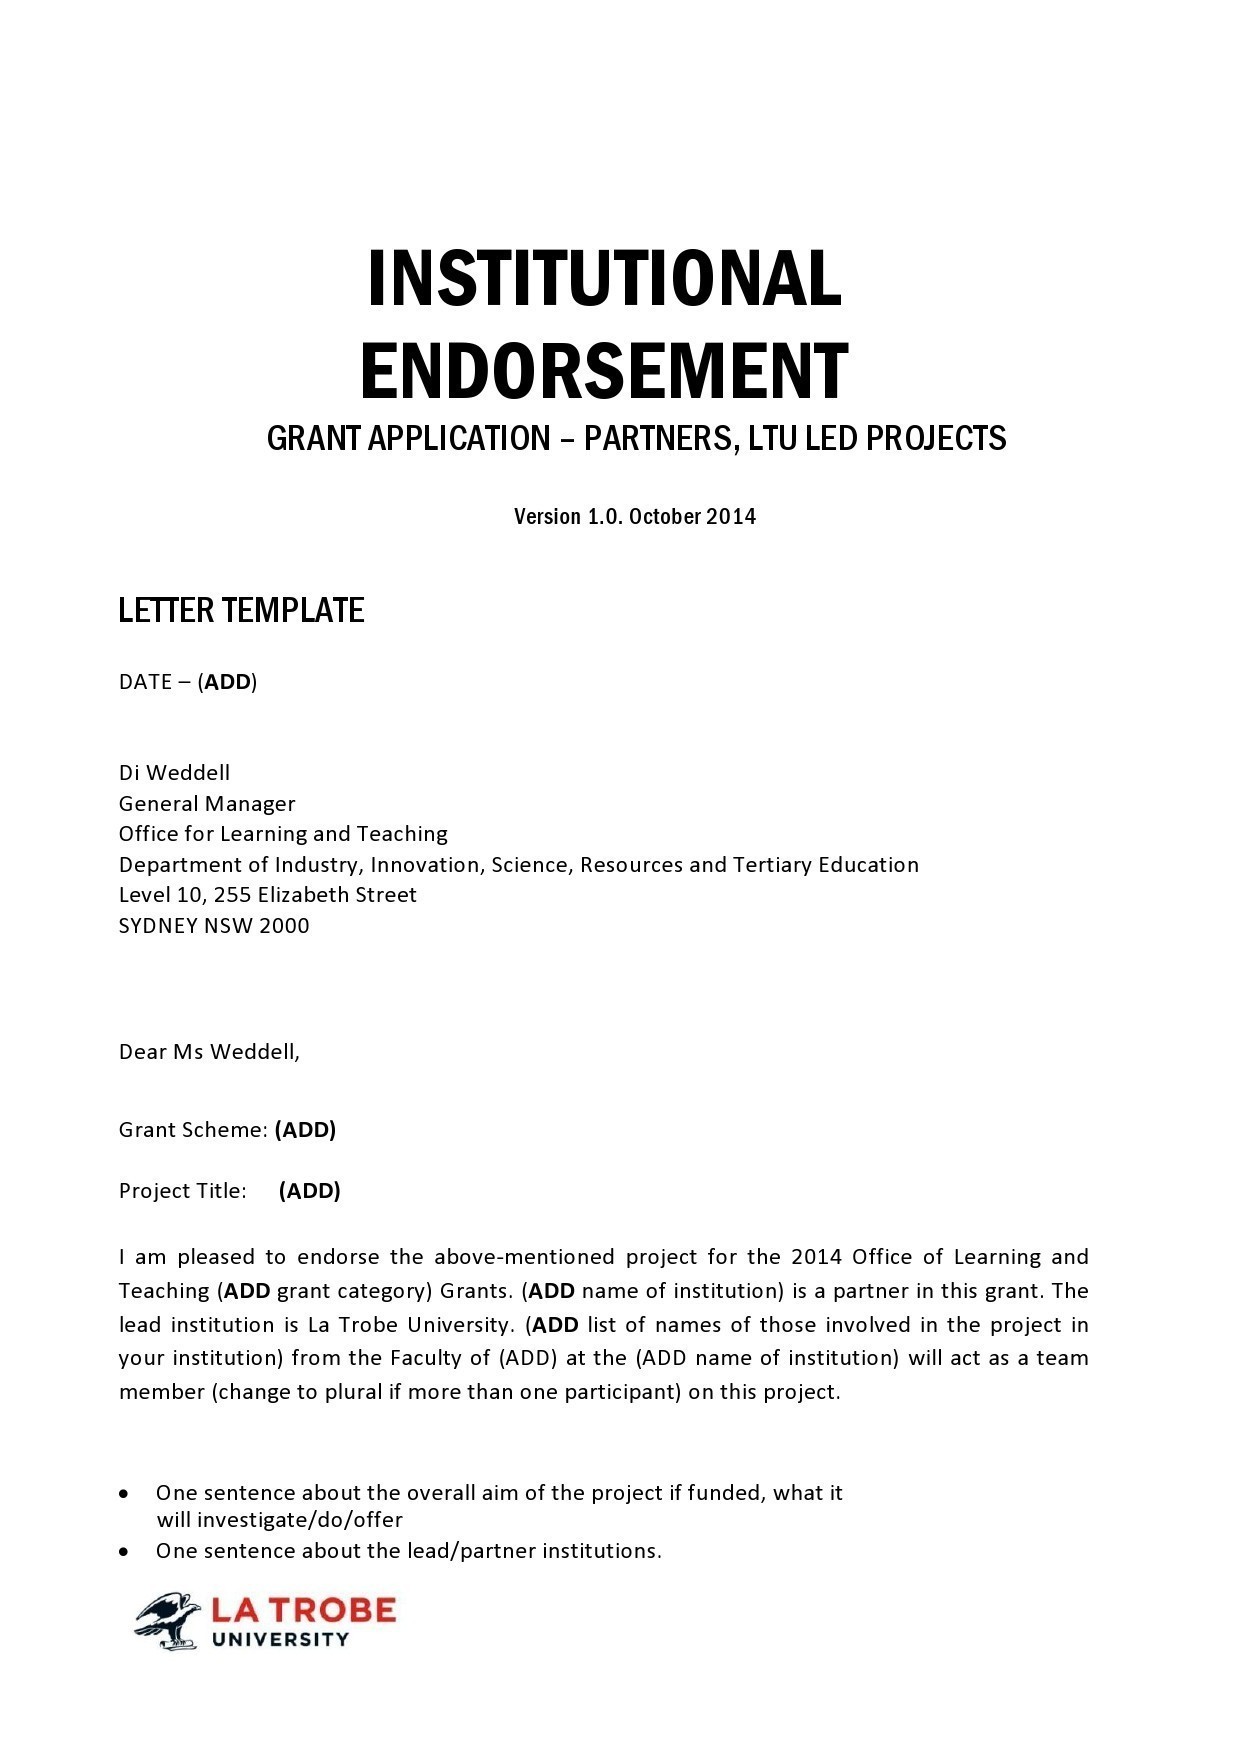 Free endorsement letter 09